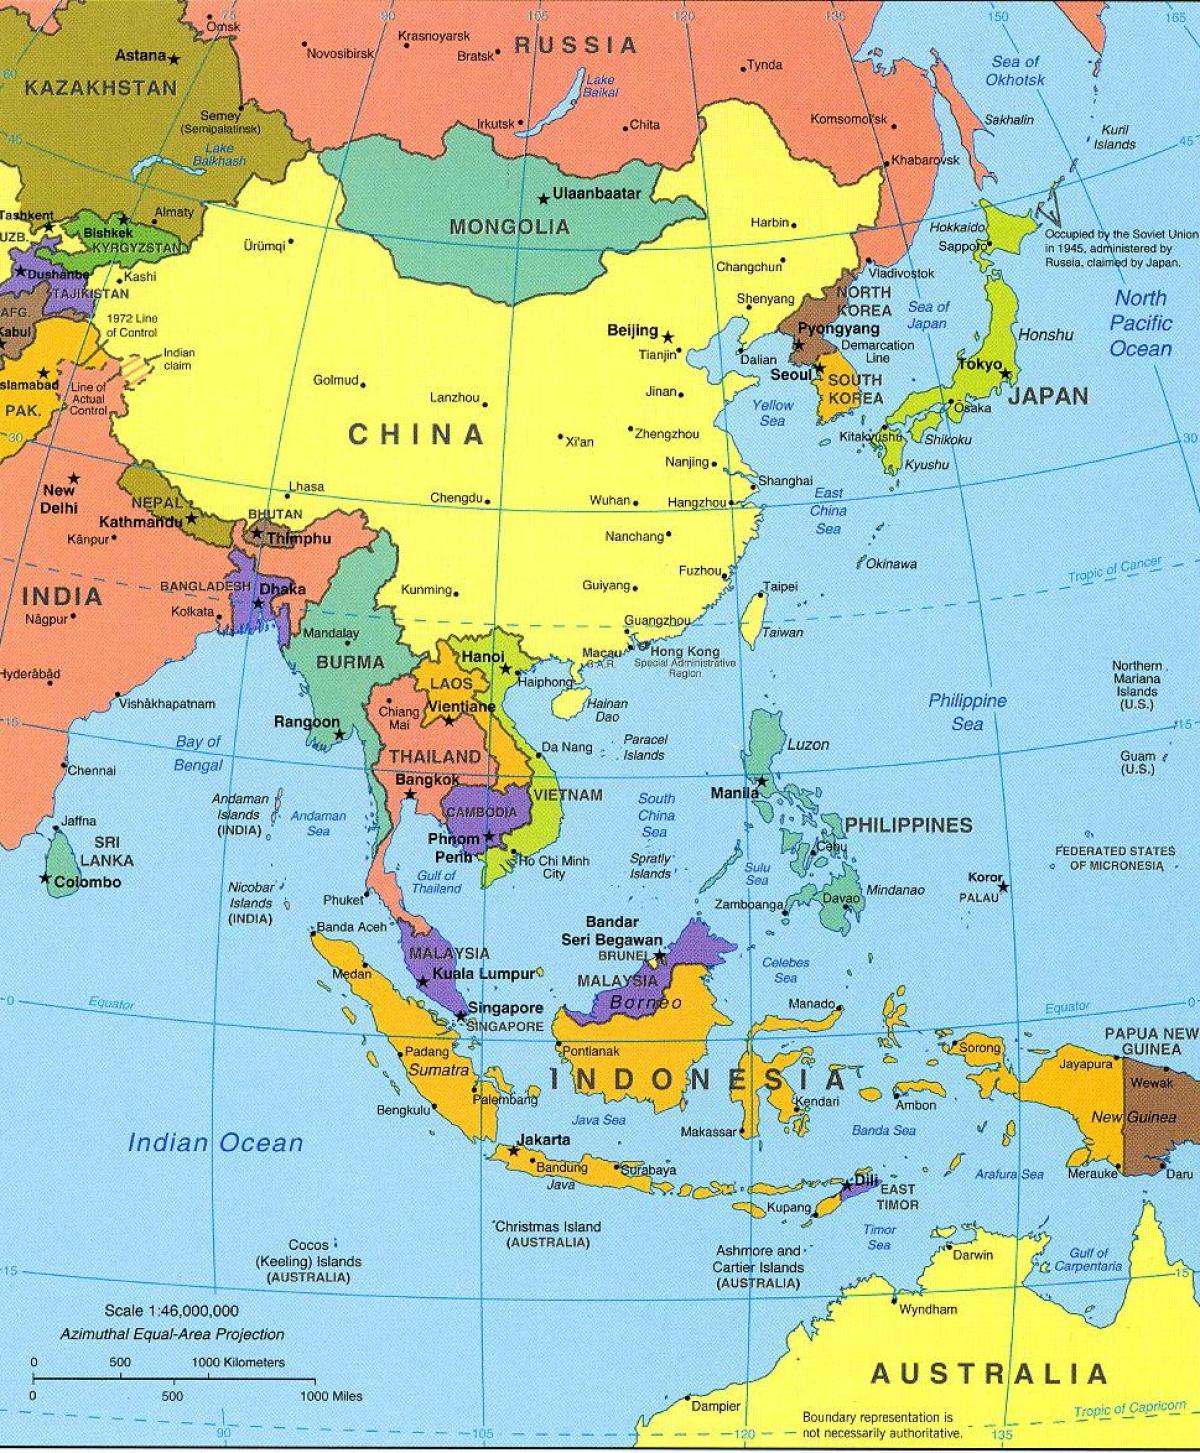 Taipeija lokaciju na svijetu mapu